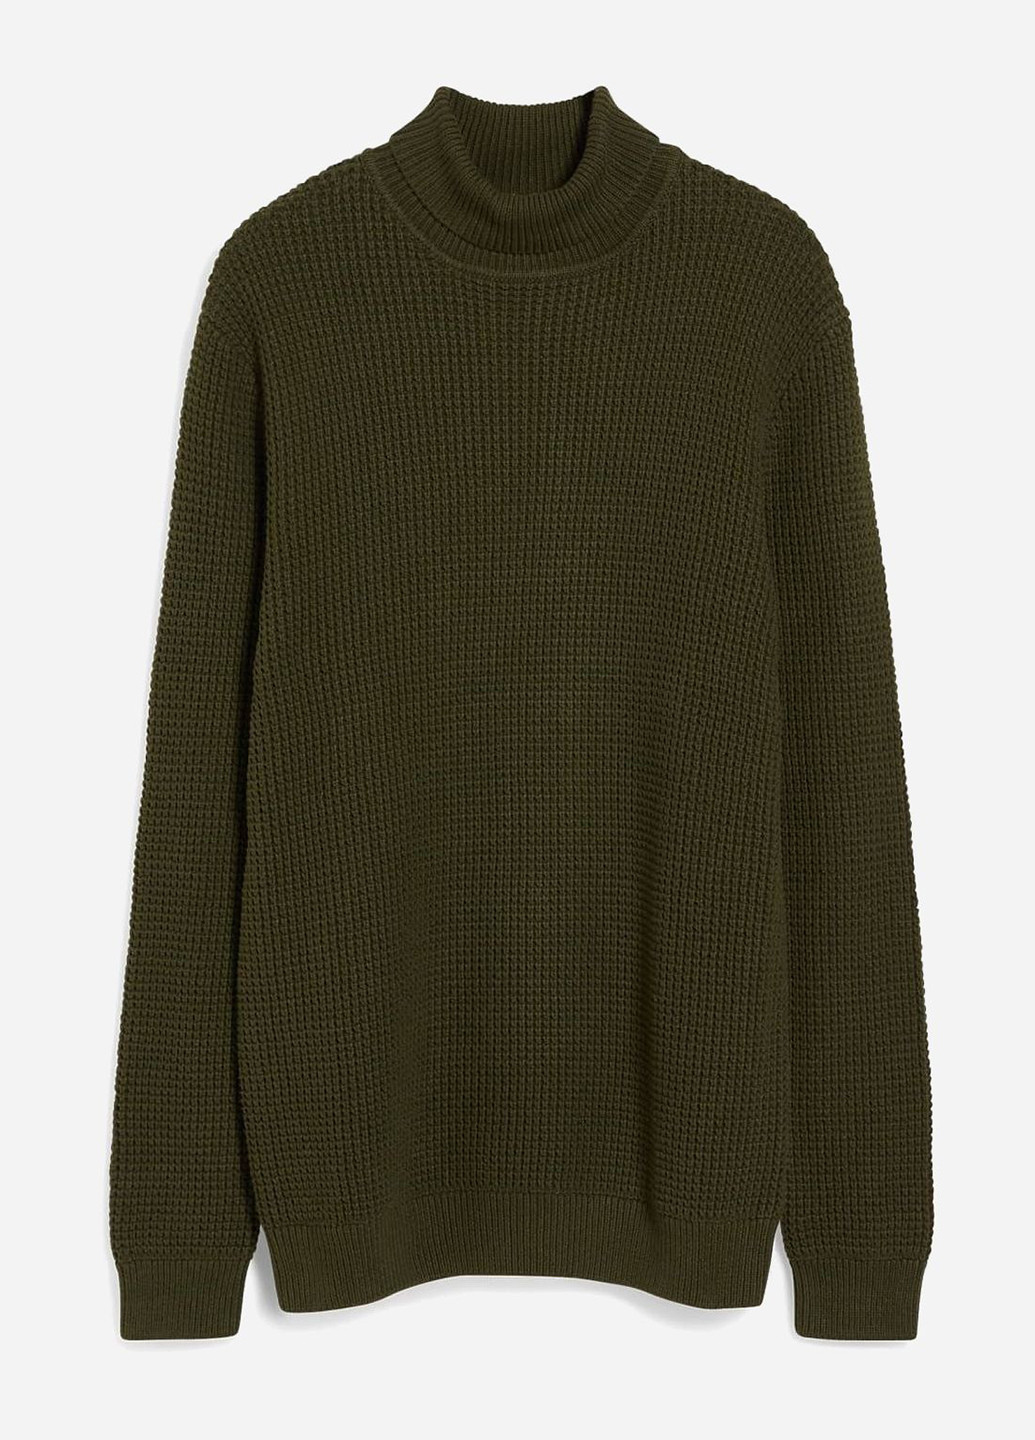 Оливковый (хаки) демисезонный свитер C&A